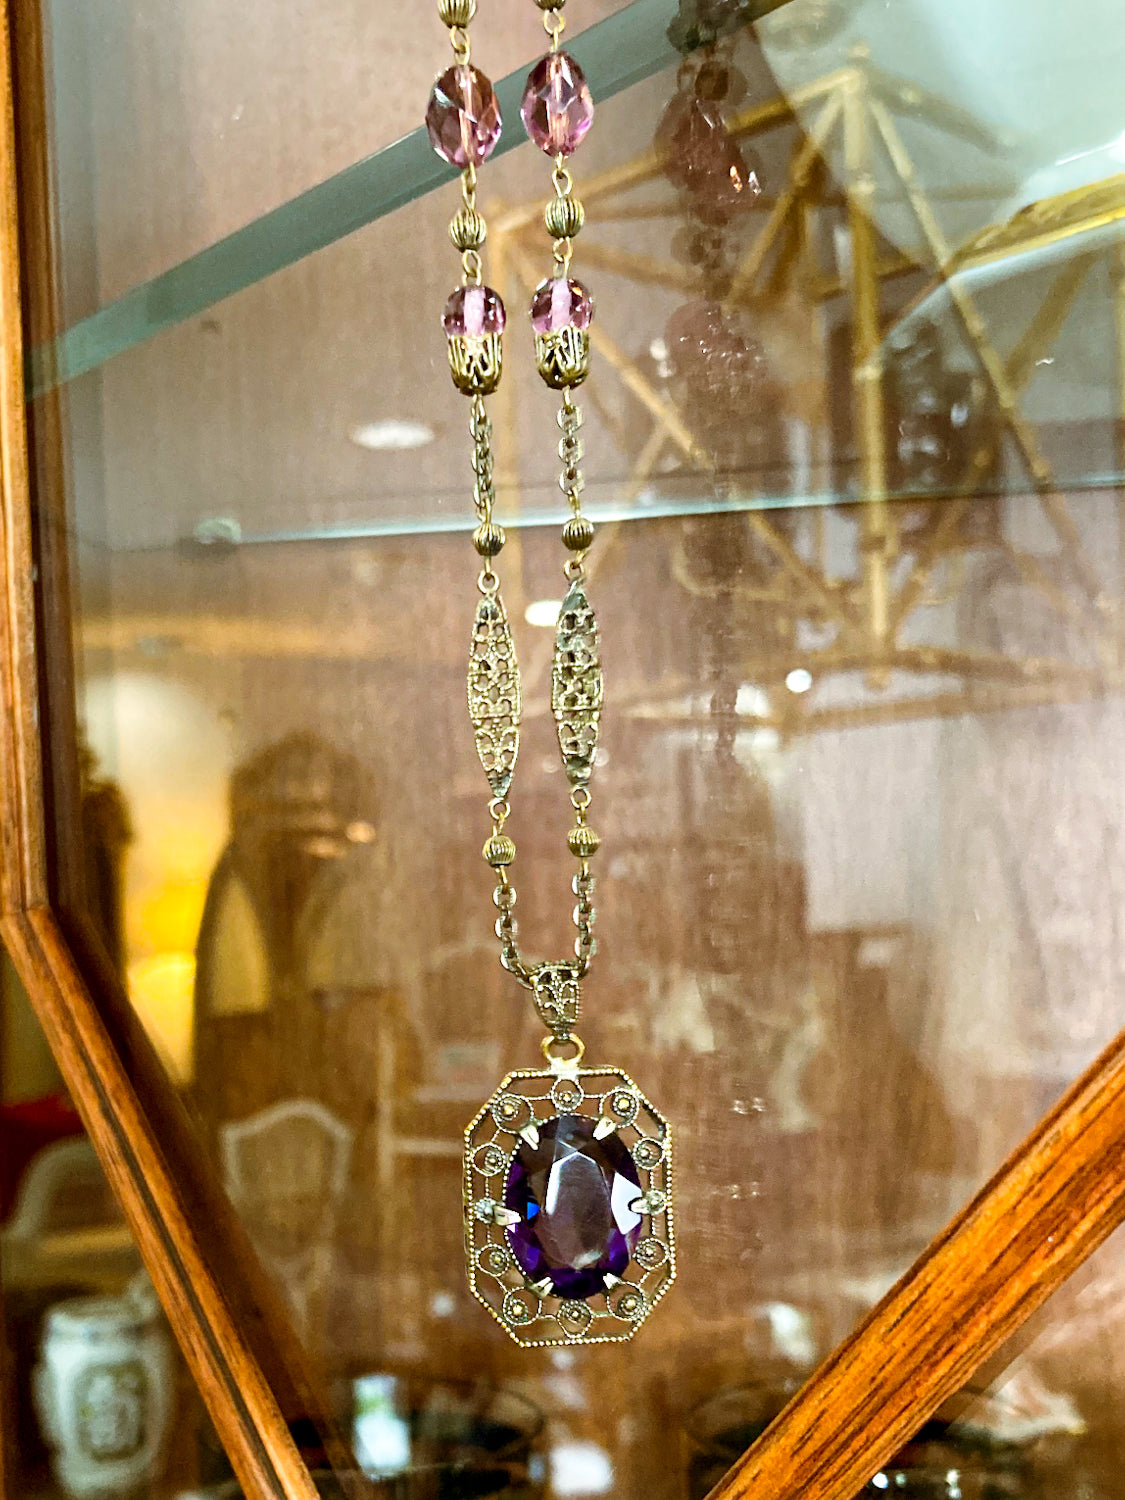 Antique Art Deco Purple Faux Amethyst Filigree Pendant Necklace